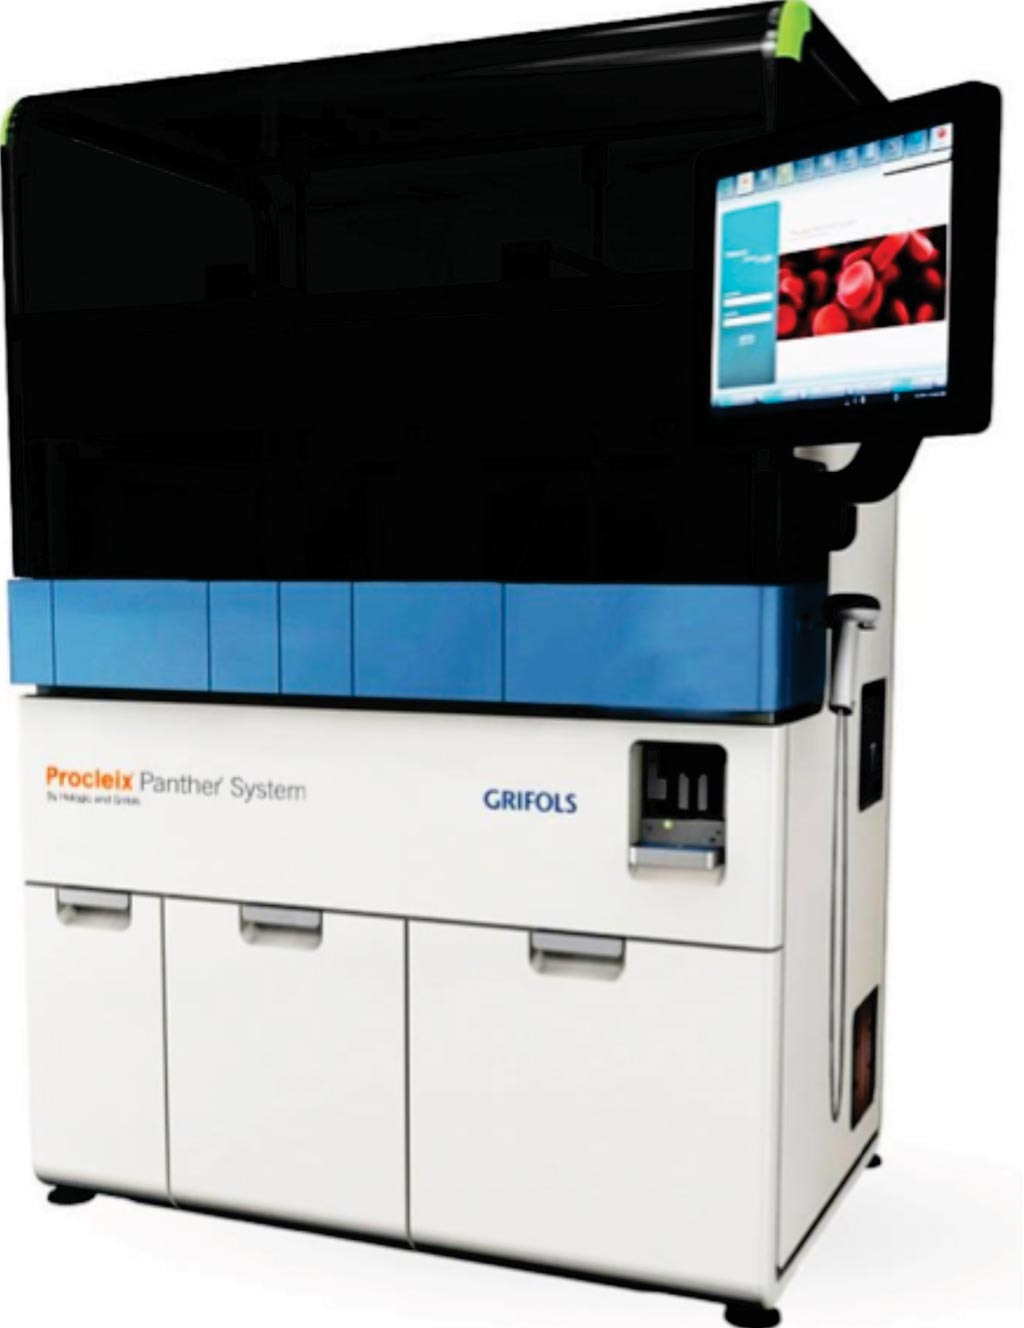 Imagen: El sistema Procleix Panther, un sistema de tecnología de ácidos nucleicos completamente integrado y automatizado para el cribado de sangre y plasma (Fotografía cortesía de Grifols Diagnostics).